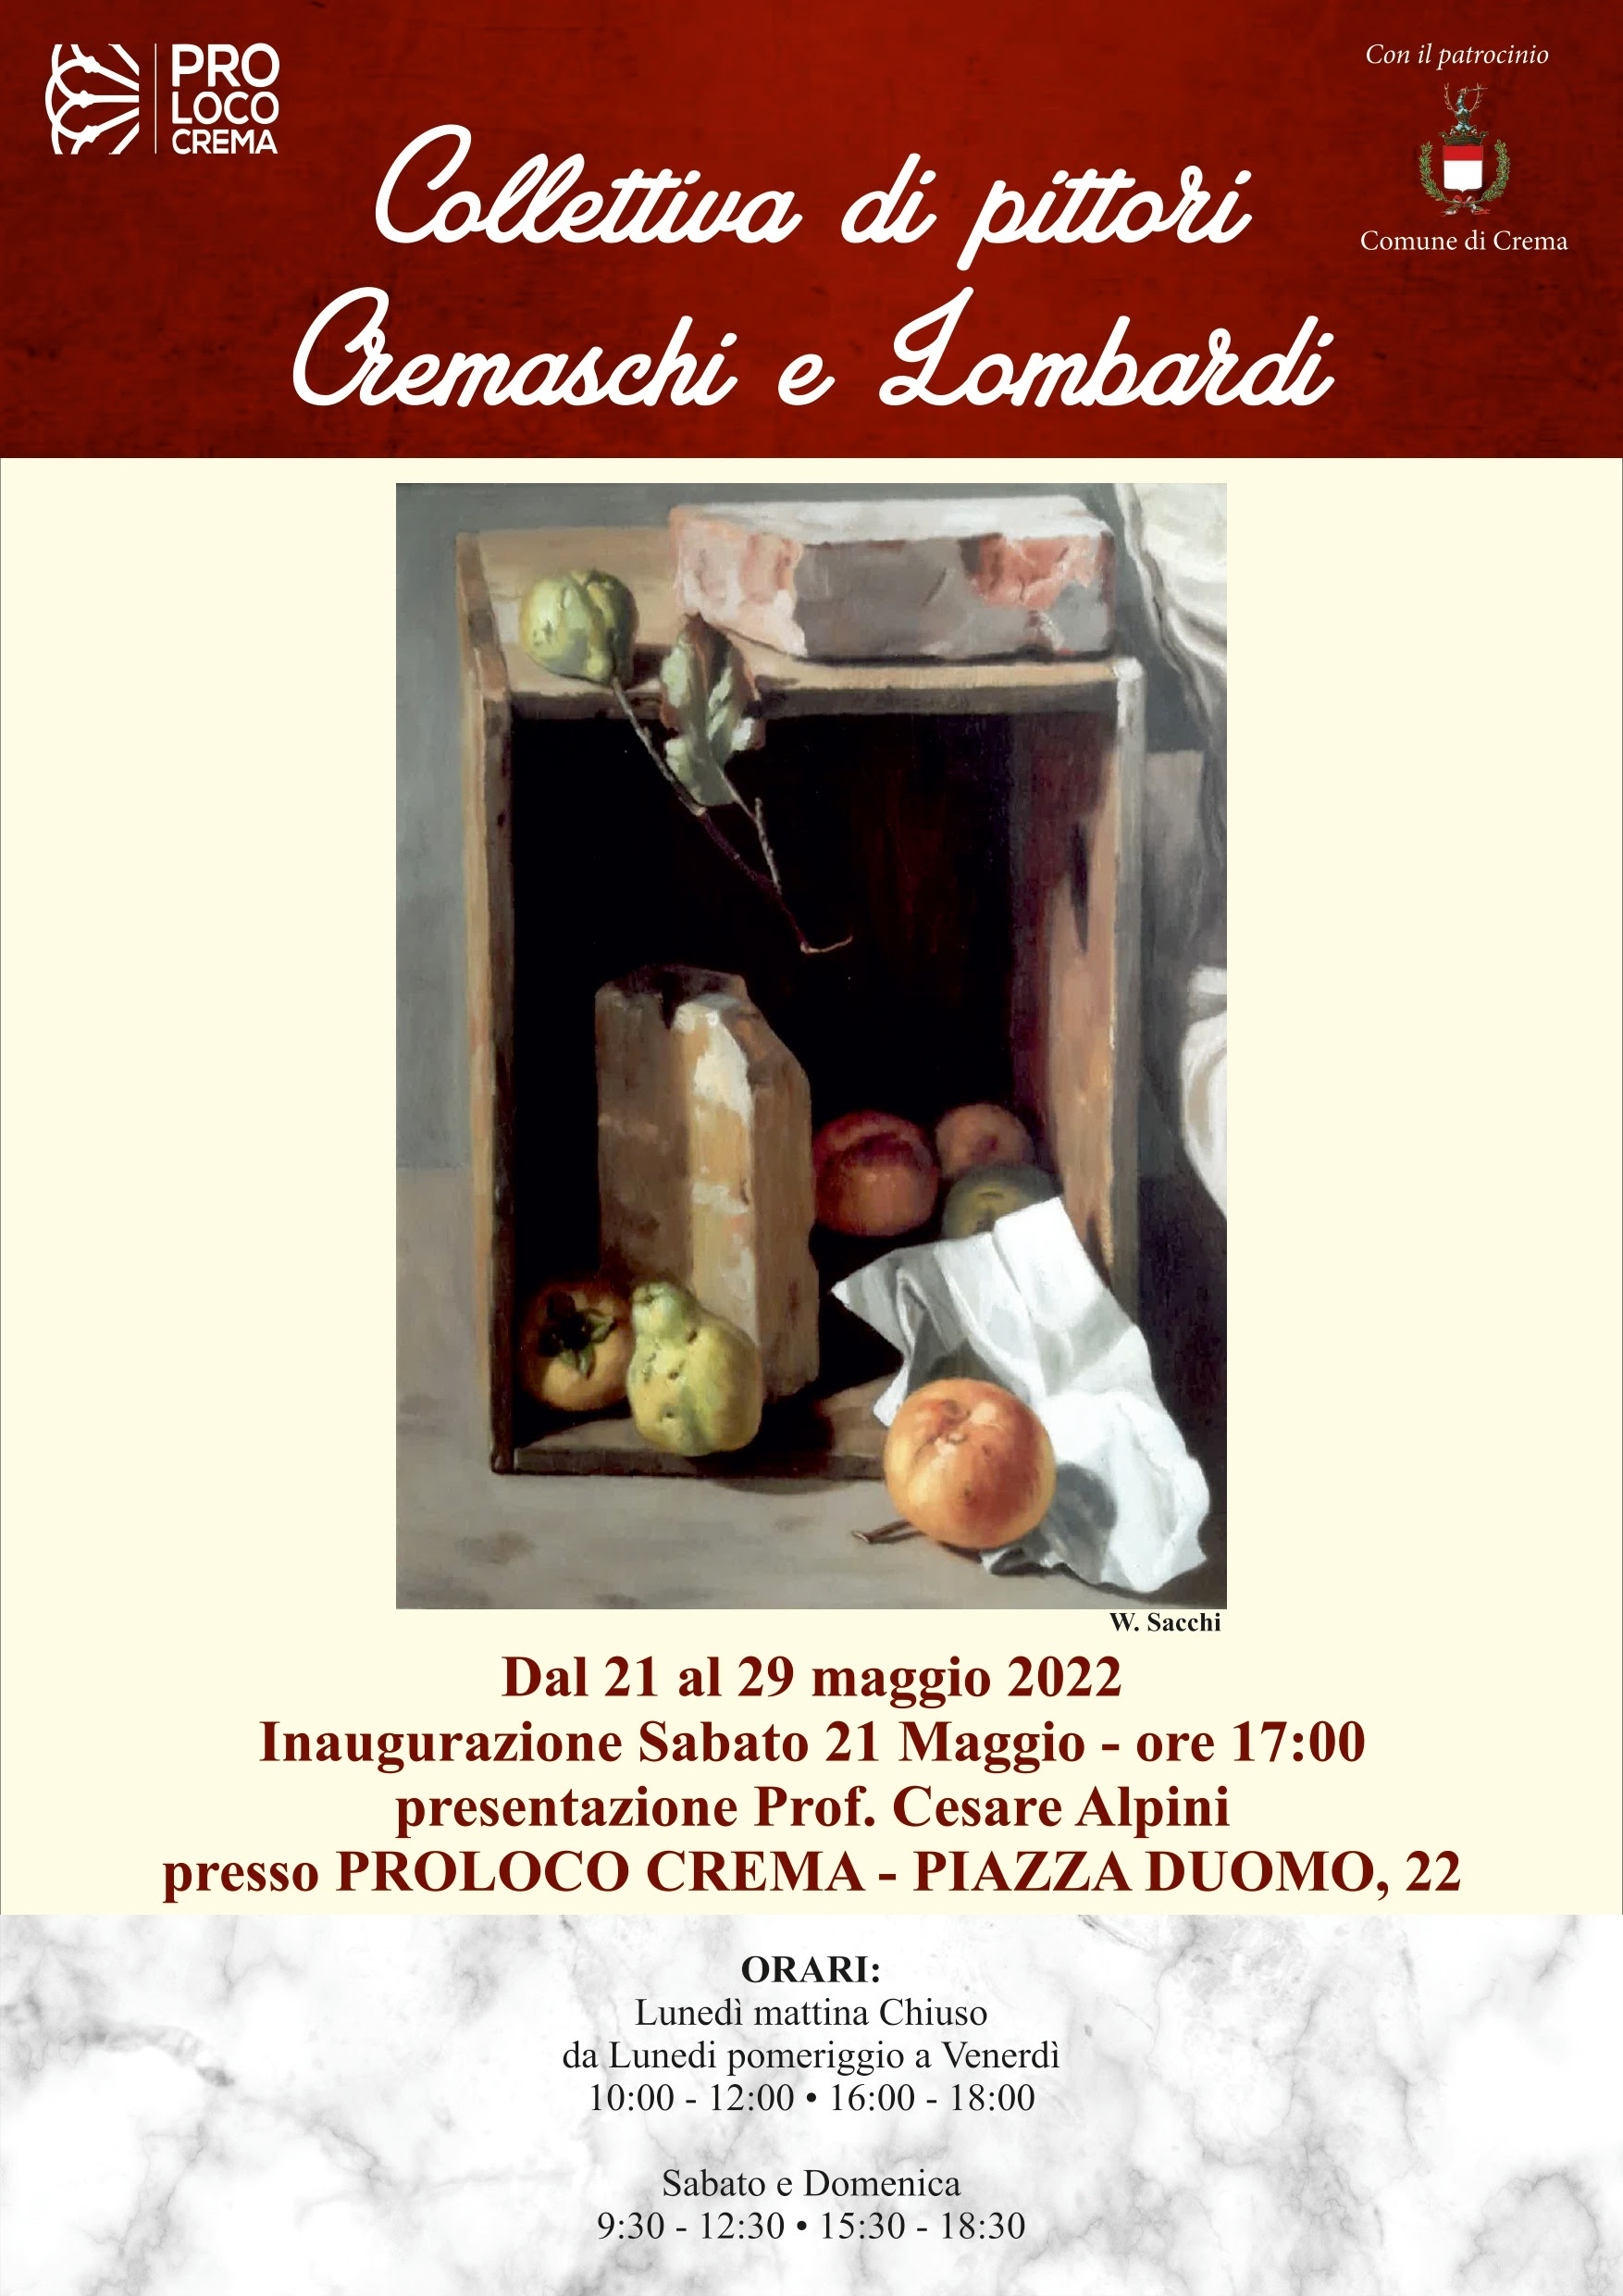 Pro Loco, apre il 21 maggio la Collettiva di pittori cremaschi e lombardi